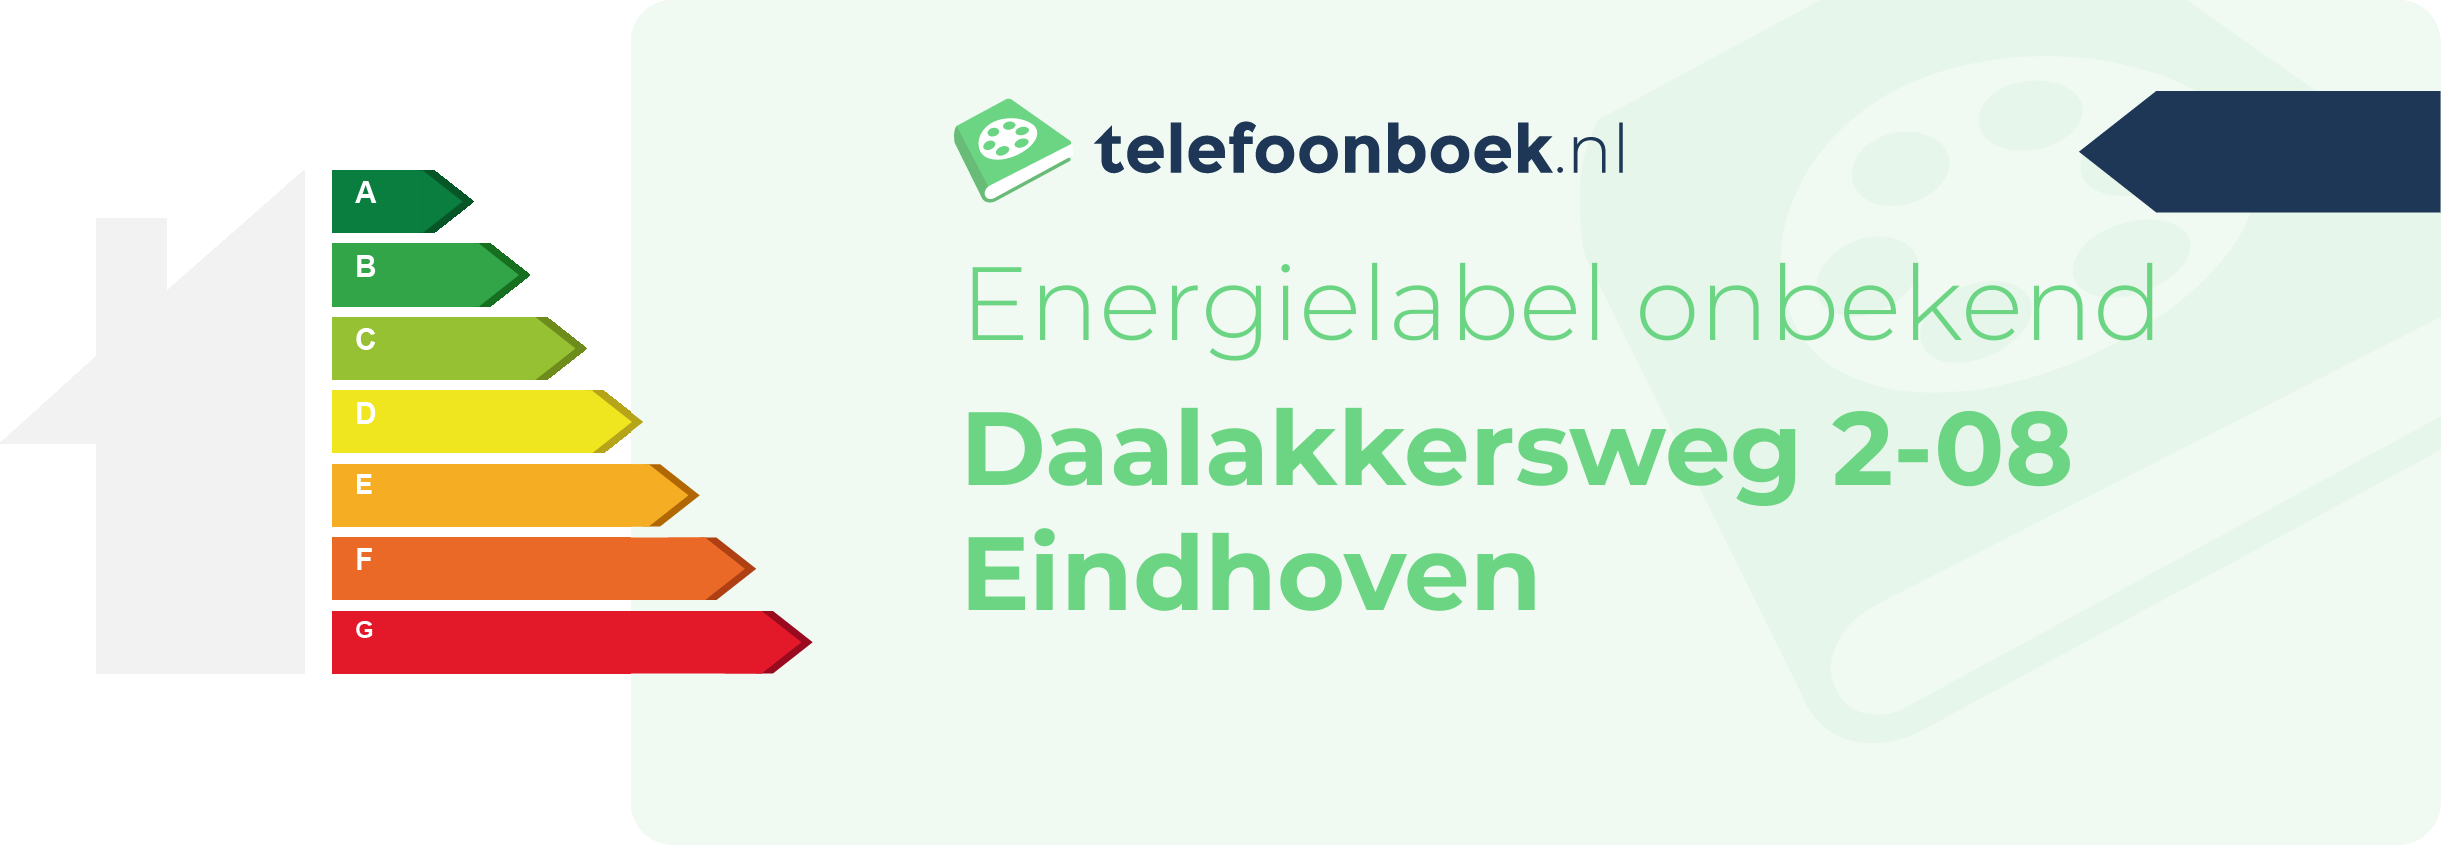 Energielabel Daalakkersweg 2-08 Eindhoven